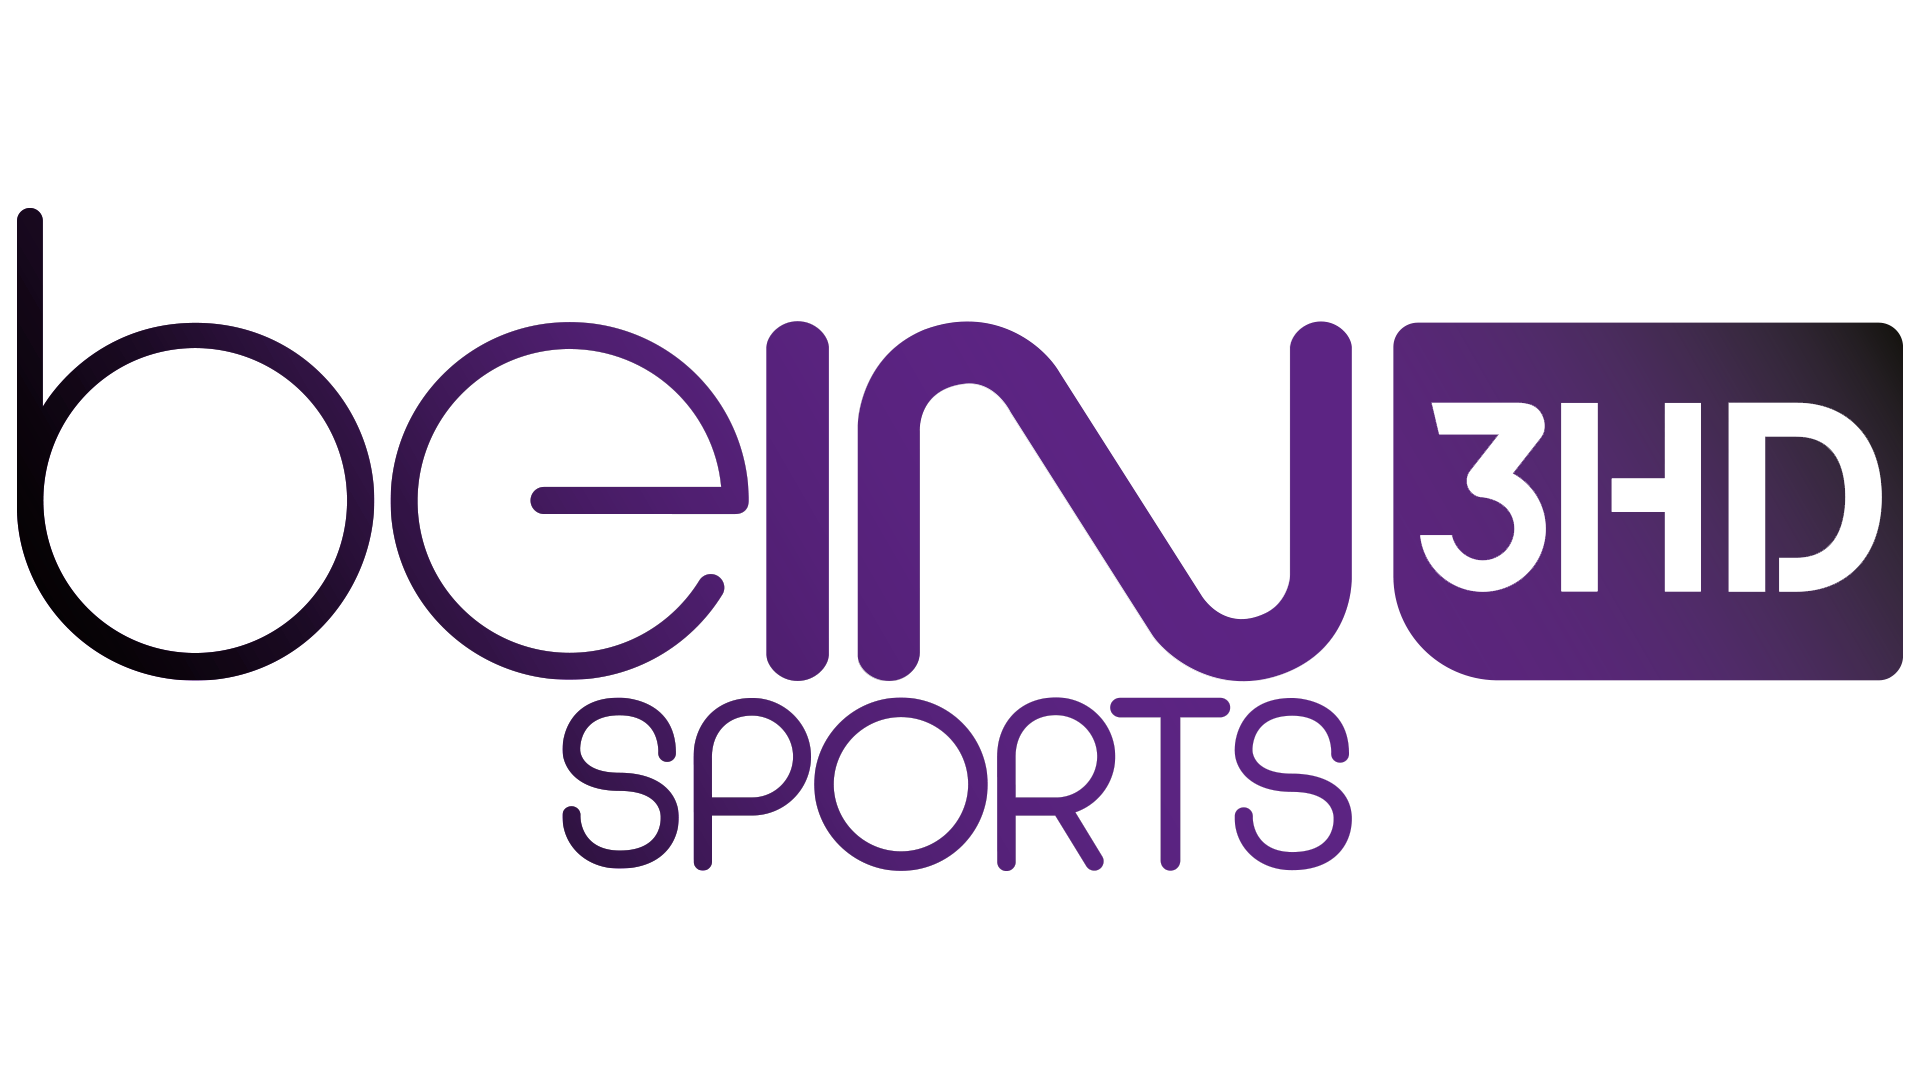 Bein sports live stream. Bein. Каналы Bein Sports. Bein Sport 2 Live. Bein Sport logo.